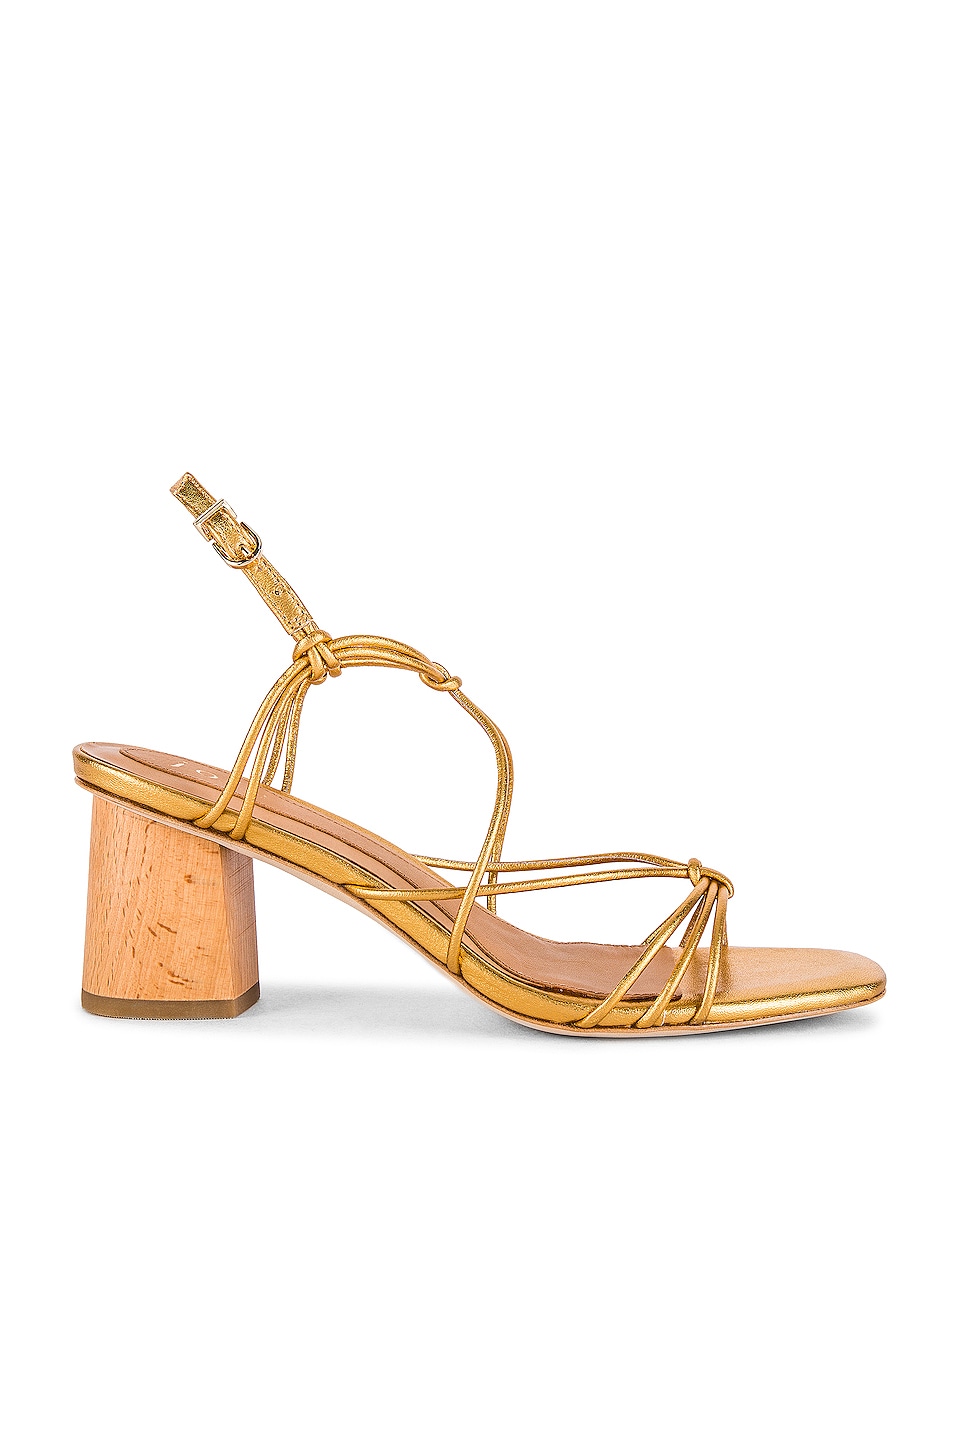 Joie Malti Sandal in Brass | REVOLVE